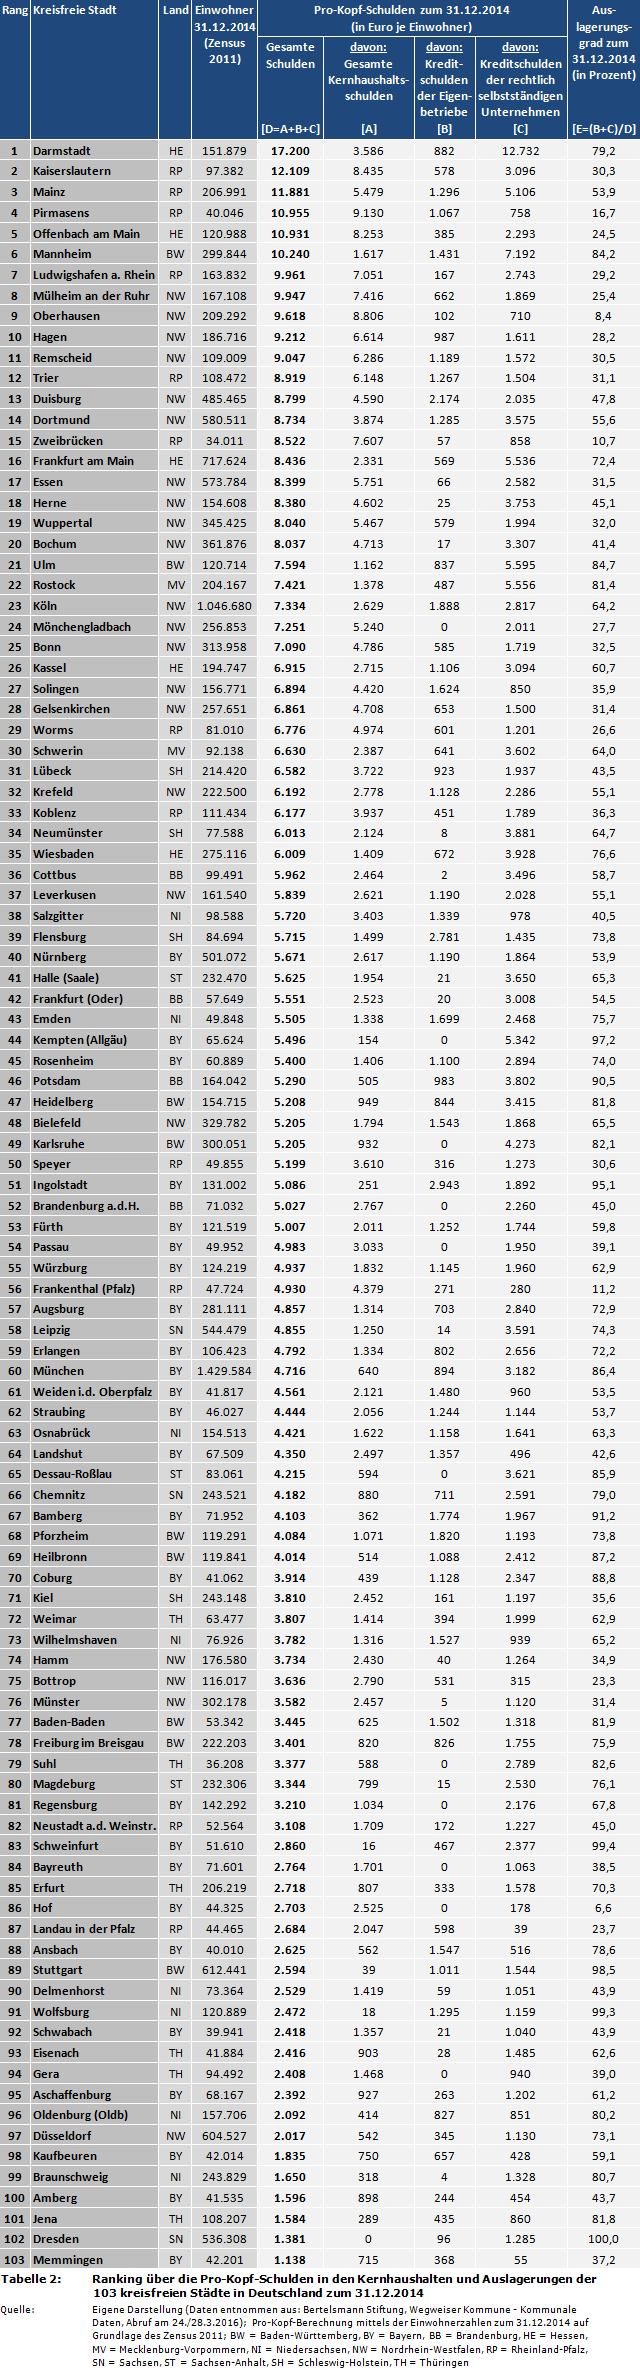 Stadtfinanzen: Ranking über die Pro-Kopf-Schulden in den Kernhaushalten und Auslagerungen der 103 kreisfreien Städte in Deutschland zum 31.12.2014